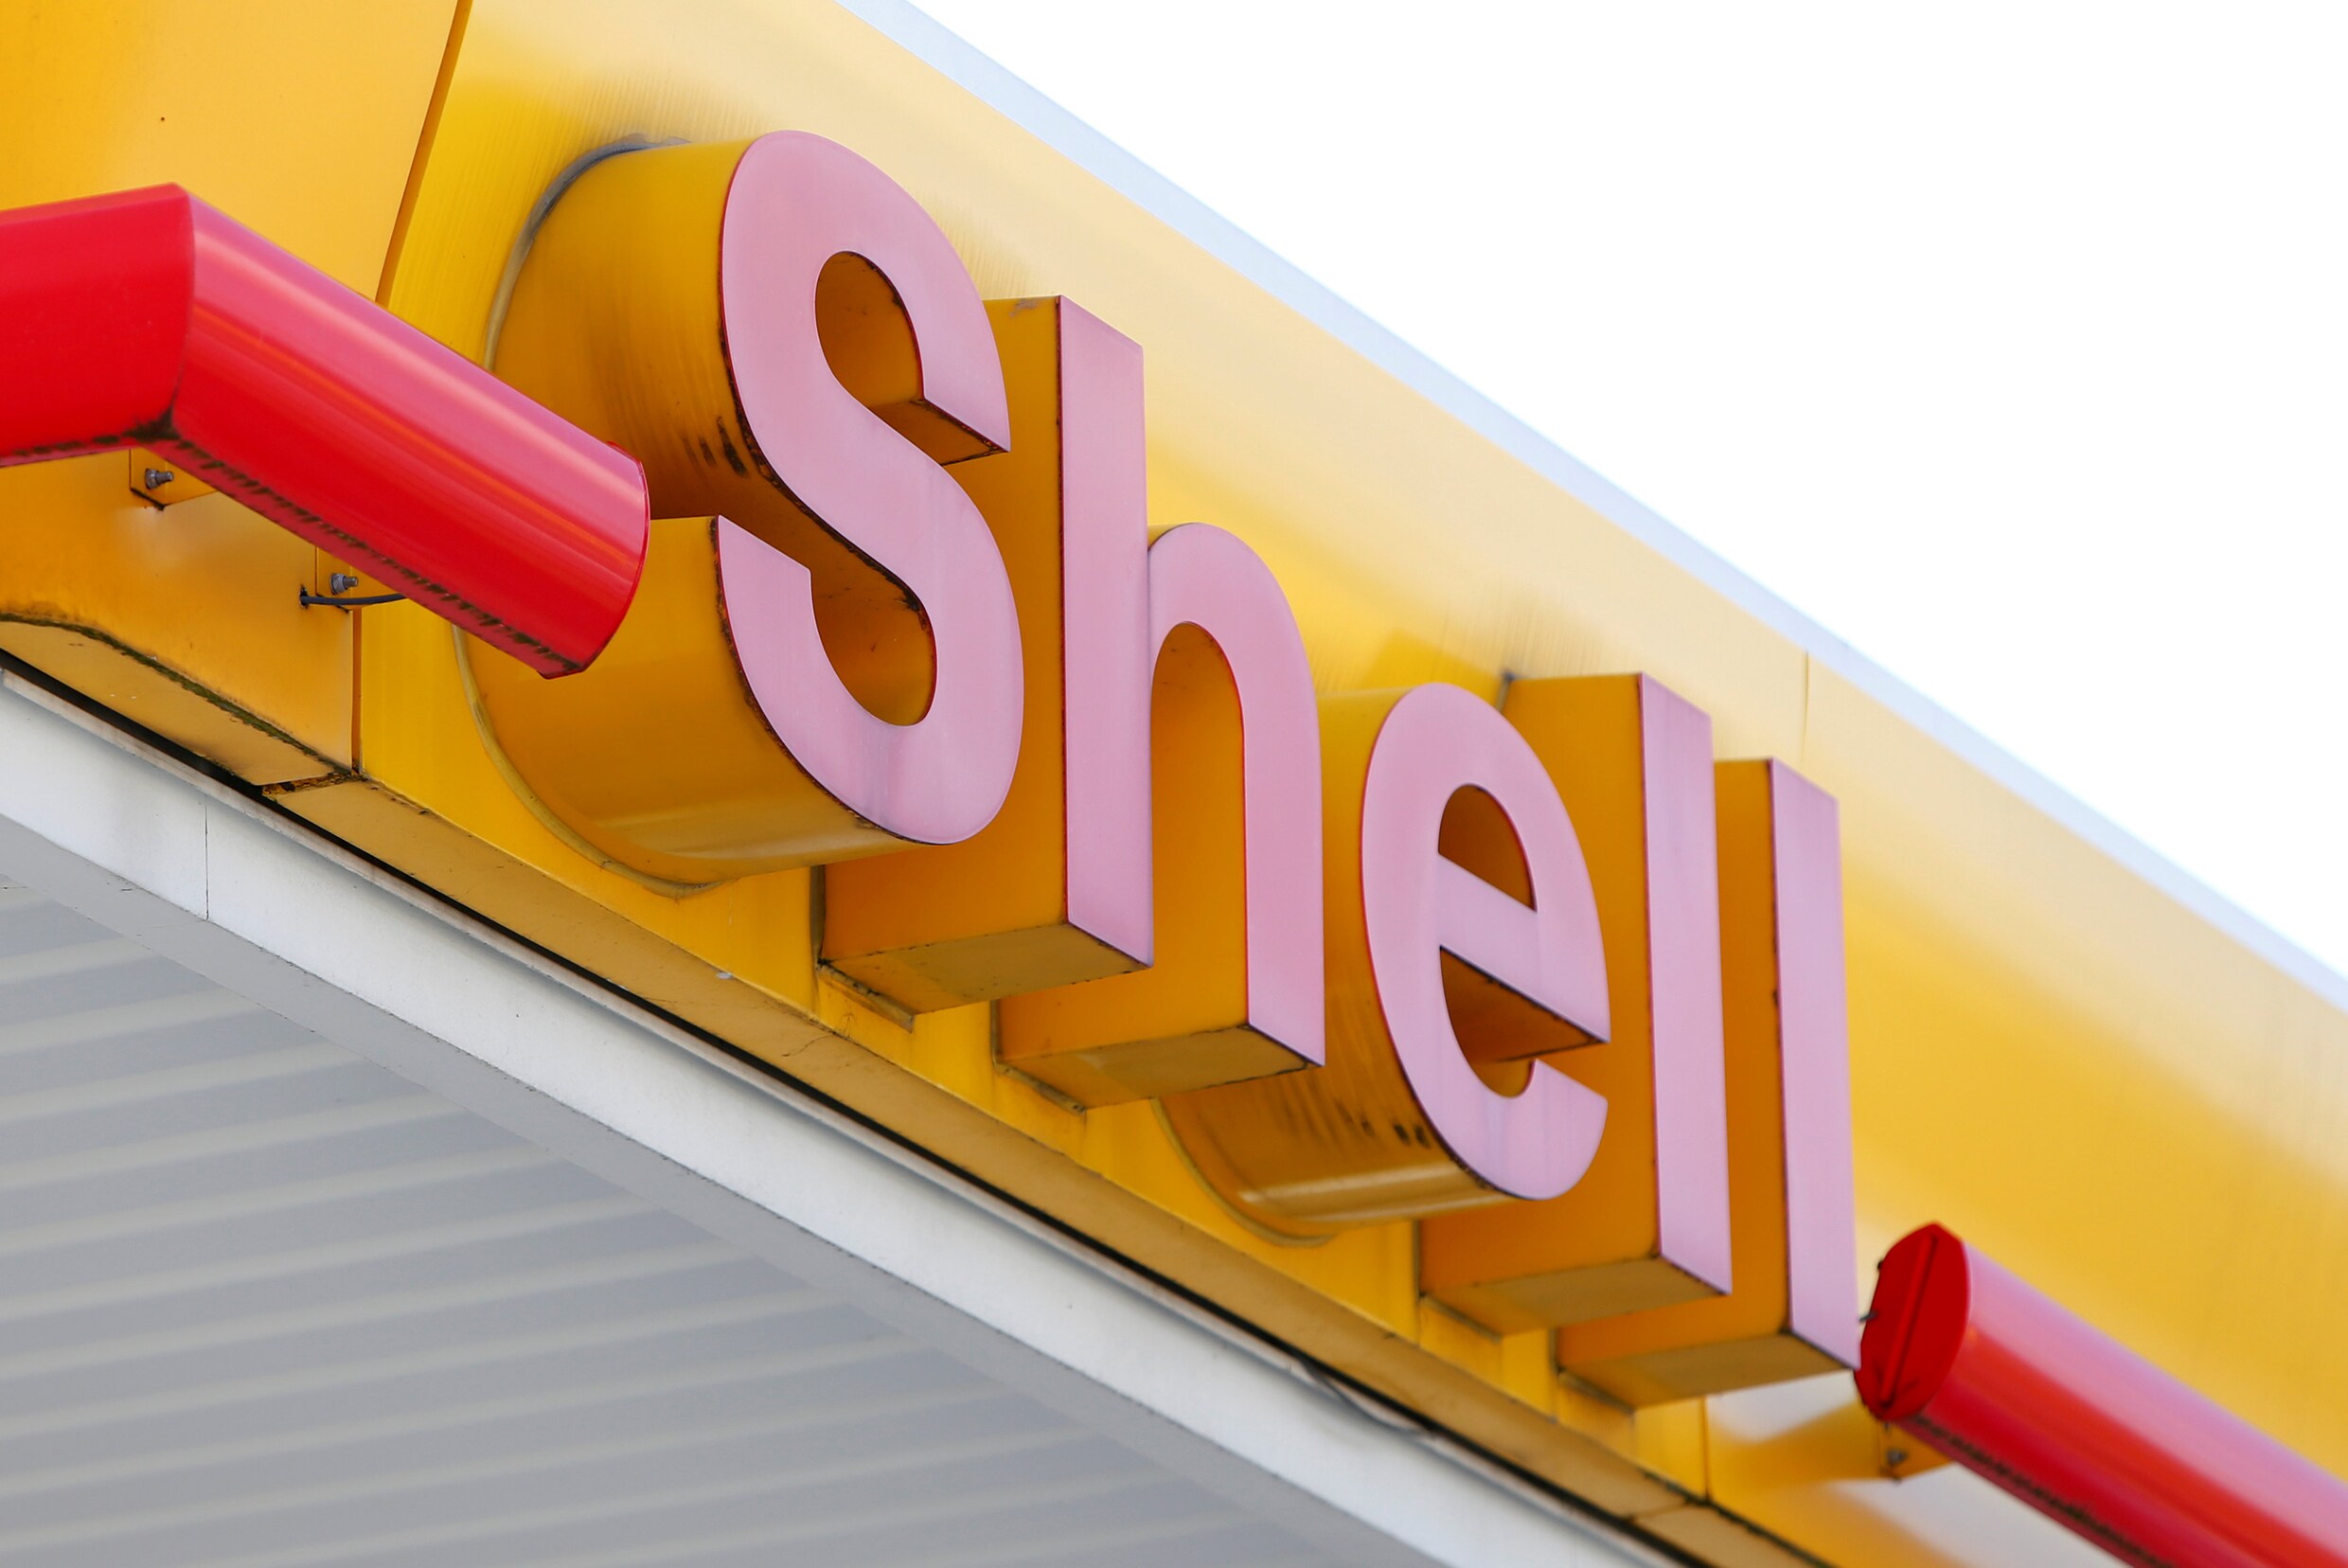 The Guardian: ‘Shell gaat budget groene energie verdubbelen’